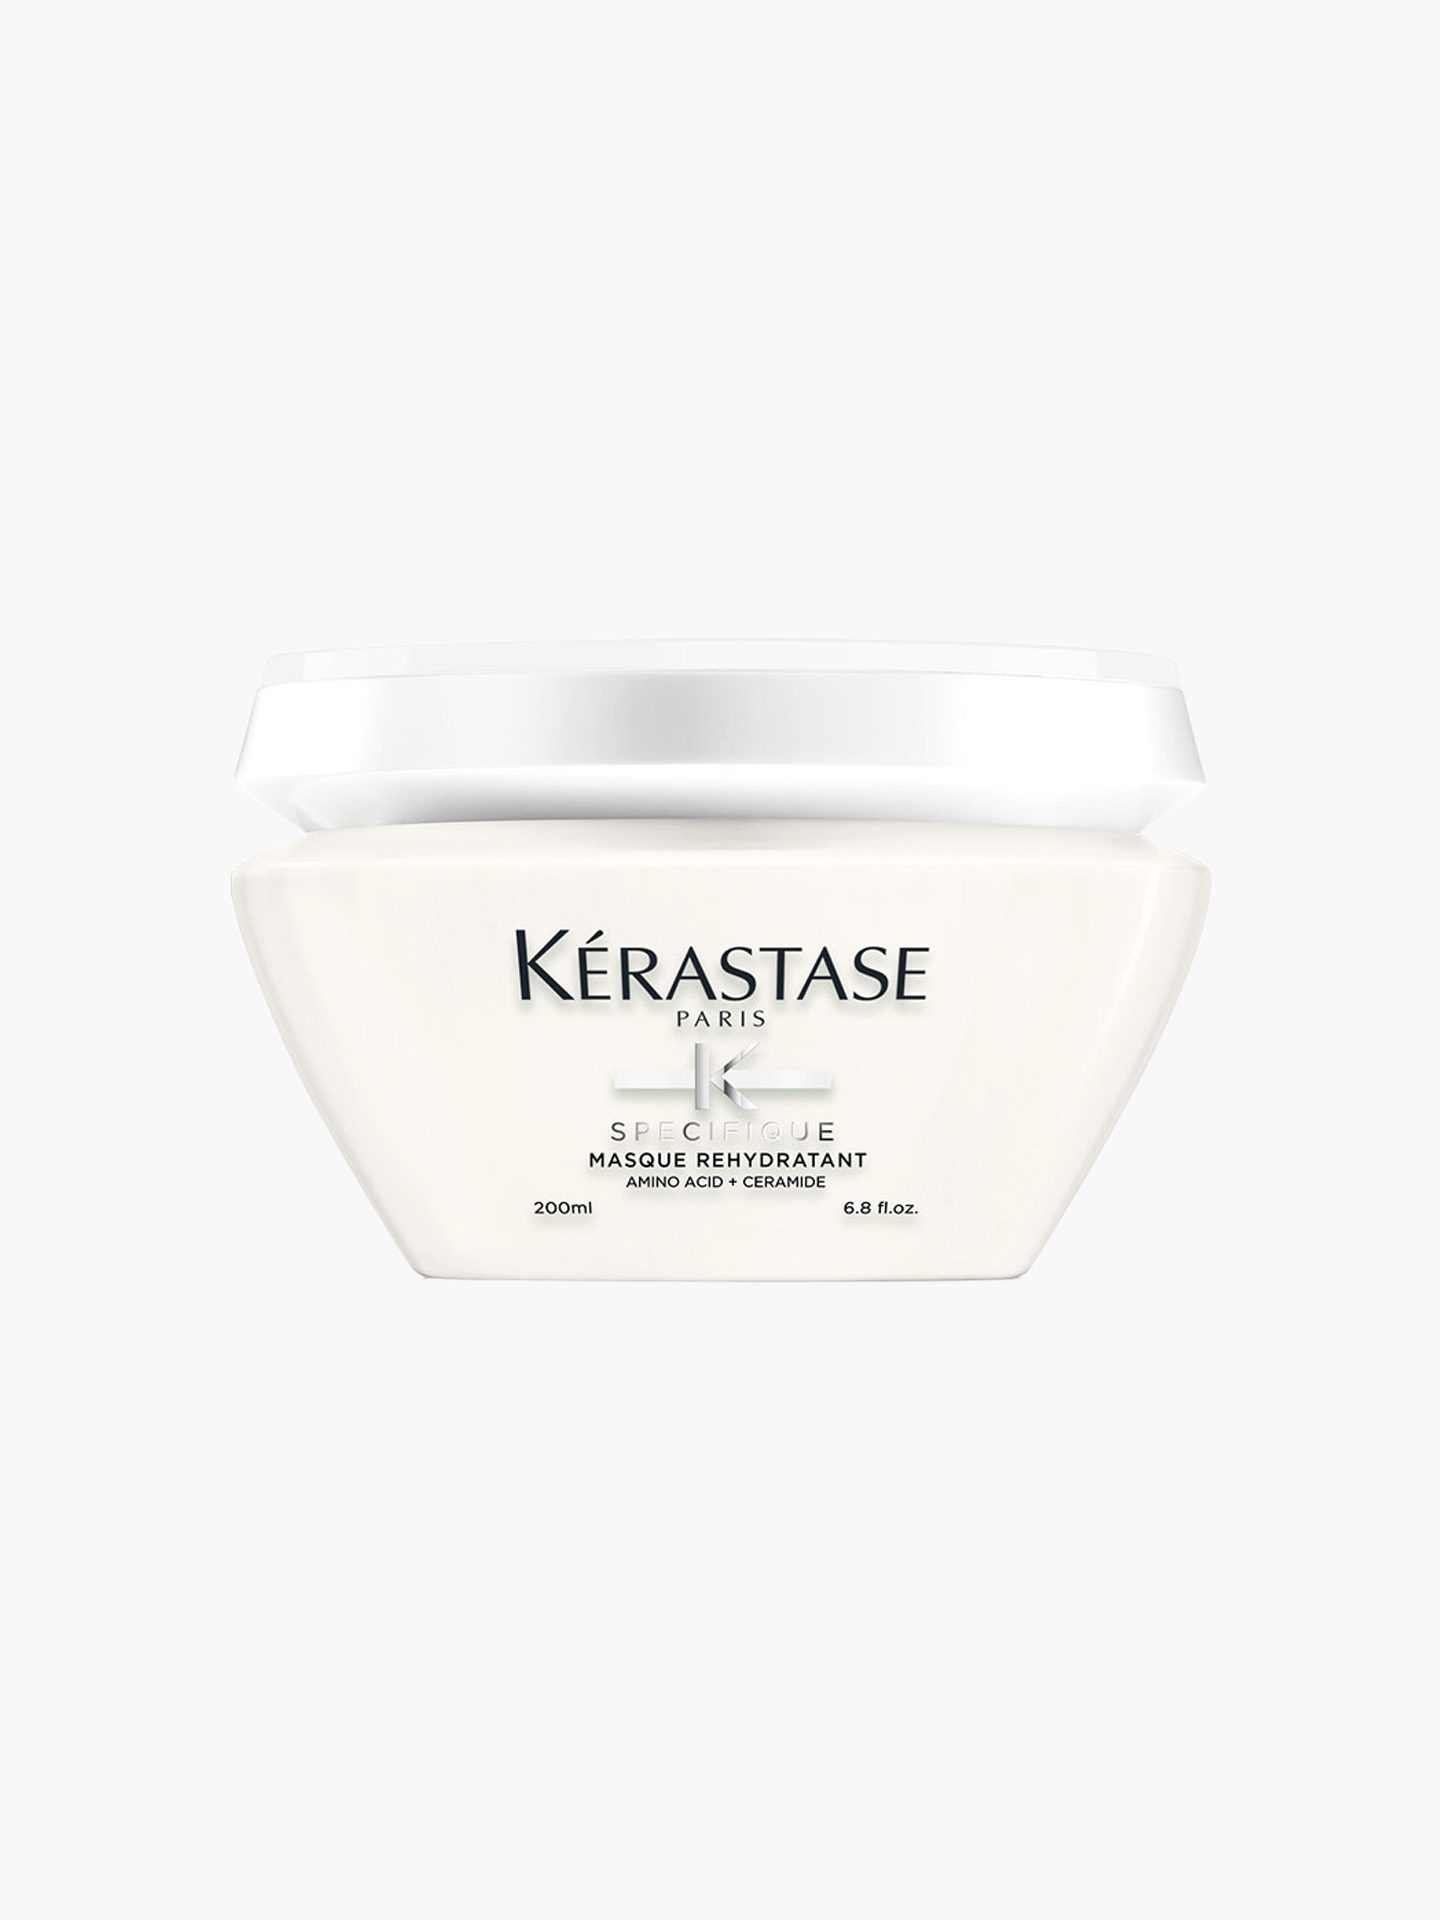 Kerastase Specifique Masque Rehydratant Yağlanma Karşıtı Dengeleyici Jel Yapılı Maske 200ml